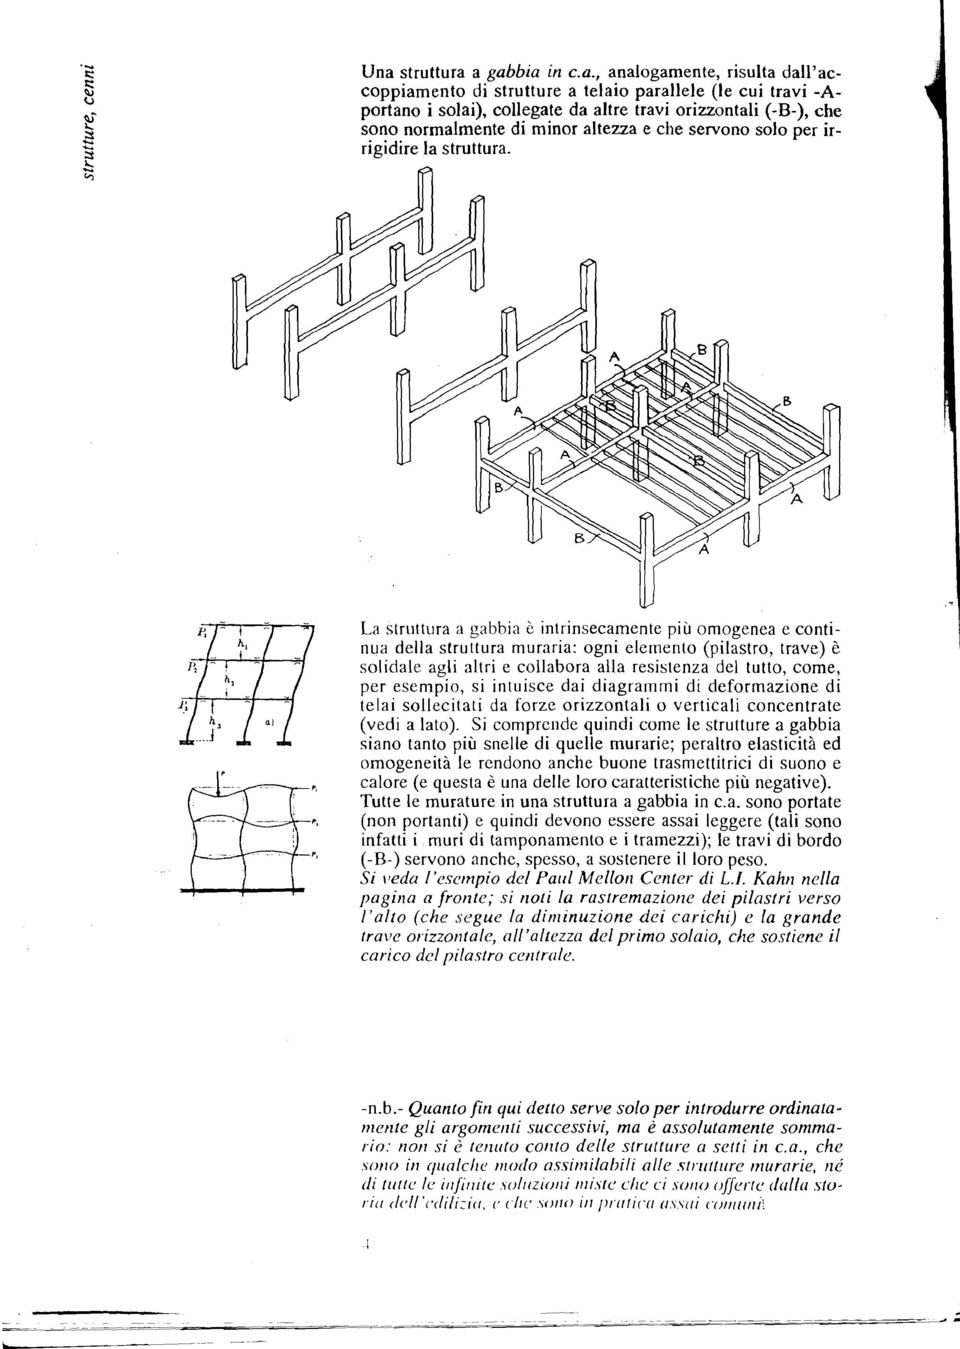 la lf[ La struttura a gabbia è intrinsecamente più omogenea e contisolidale nua della agli struttura altri e rnuraria: collabora ogni alla elernento resistenza (pilastro, del tutto, trave) come, è I